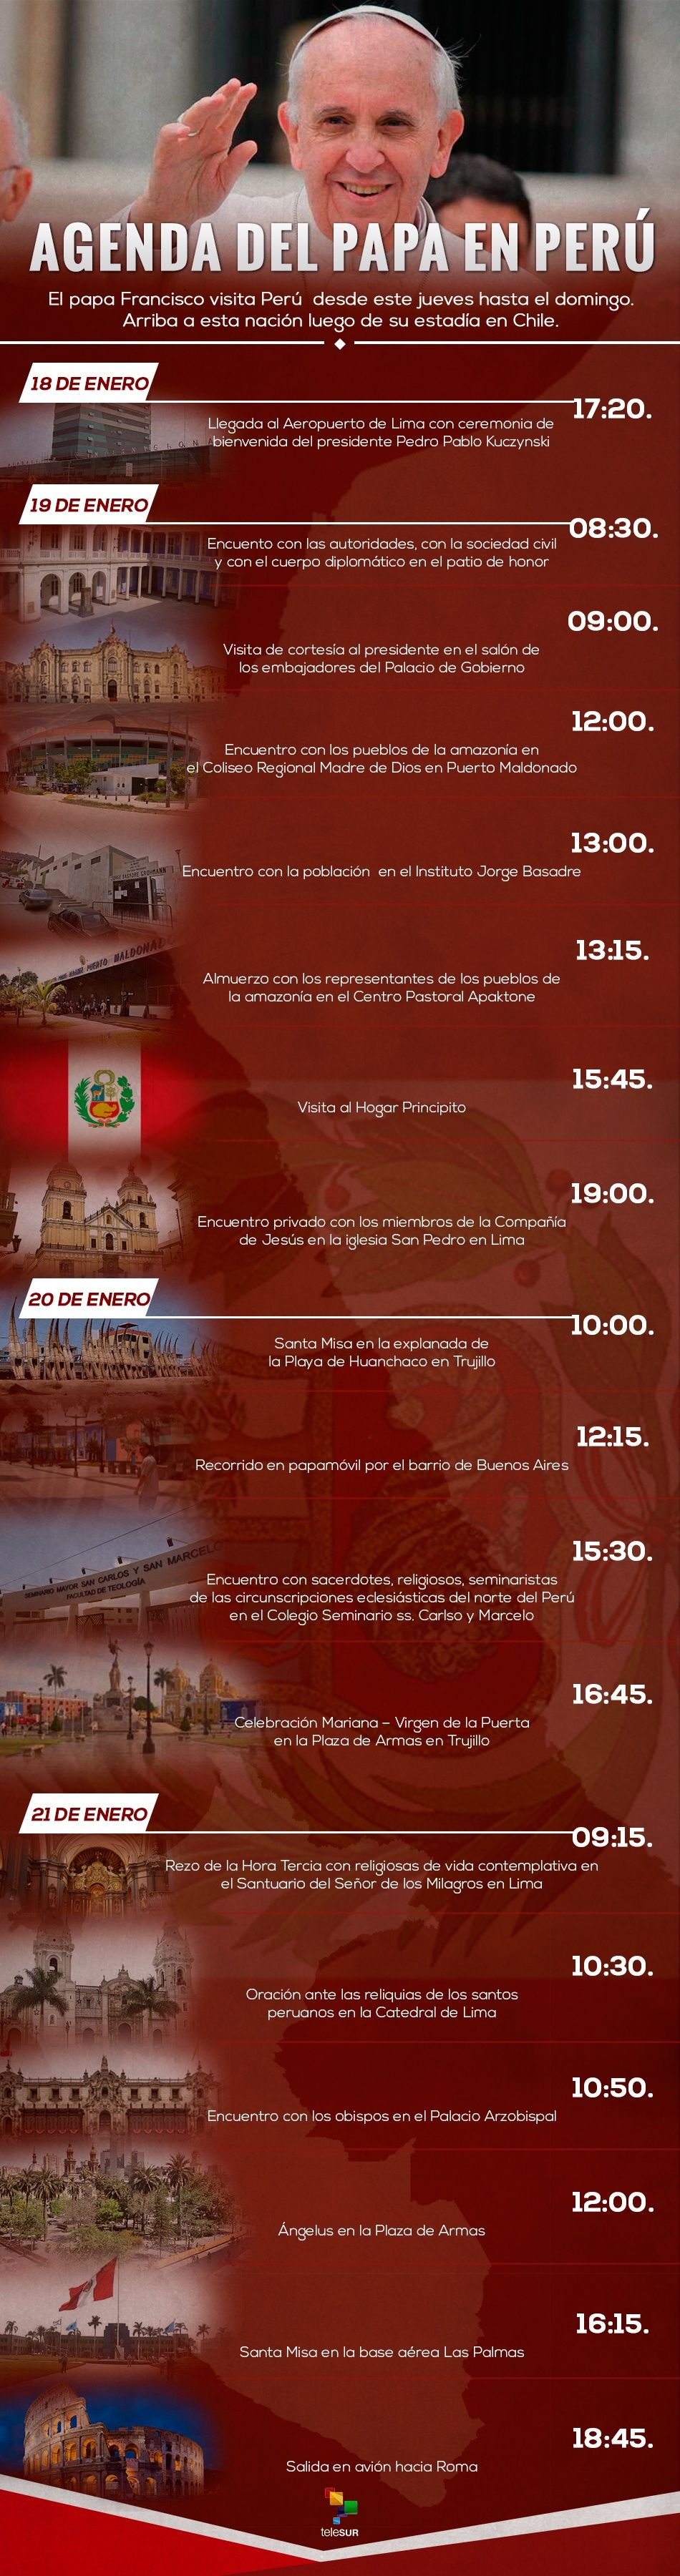 Agenda del papa en Perú Multimedia teleSUR